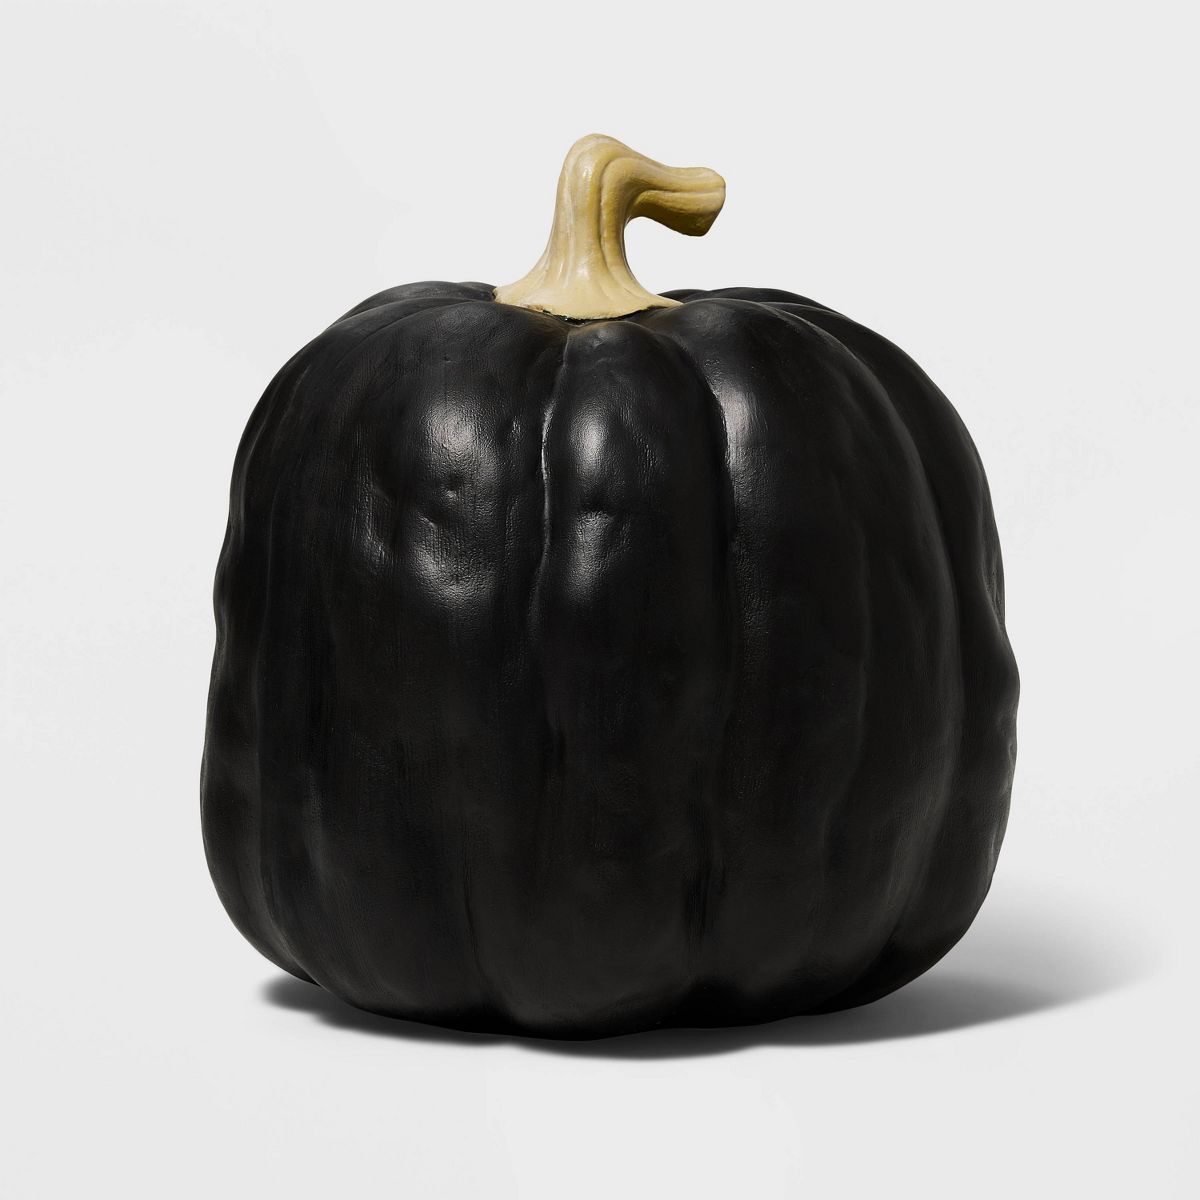 Falloween Medium Black Sheltered Porch Pumpkin Halloween Decorative Sculpture - Hyde & EEK! Bouti... | Target